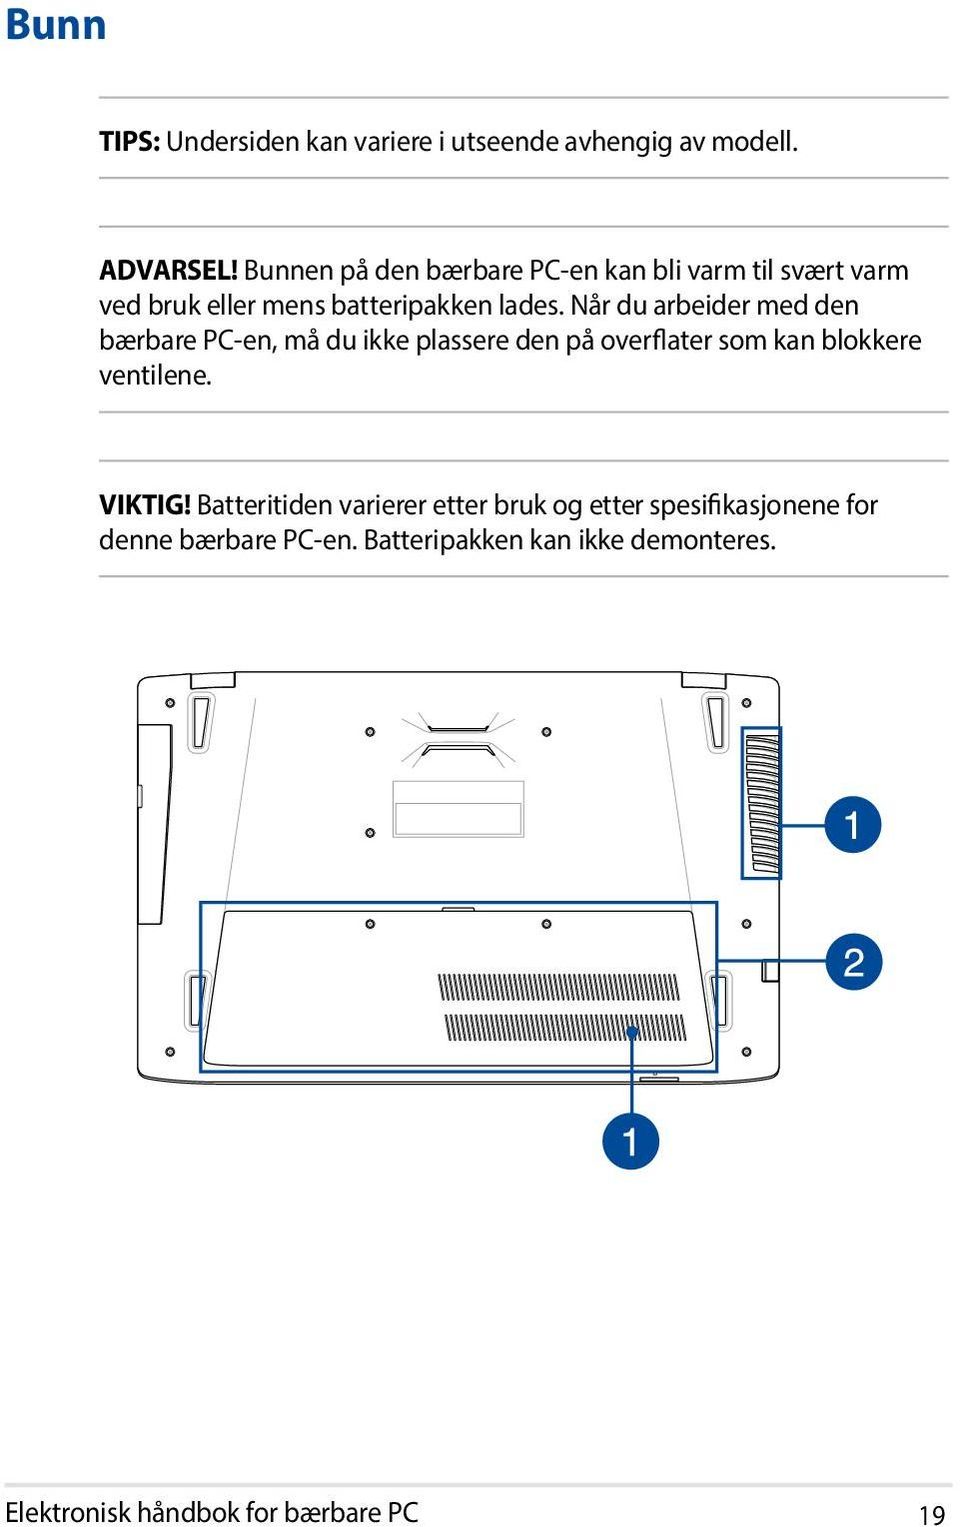 Når du arbeider med den bærbare PC-en, må du ikke plassere den på overflater som kan blokkere ventilene.